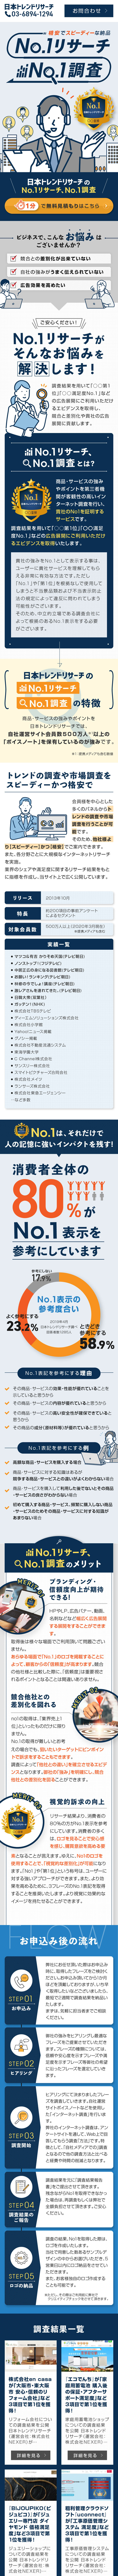 日本トレンドリサーチのNo.1調査_sp_1